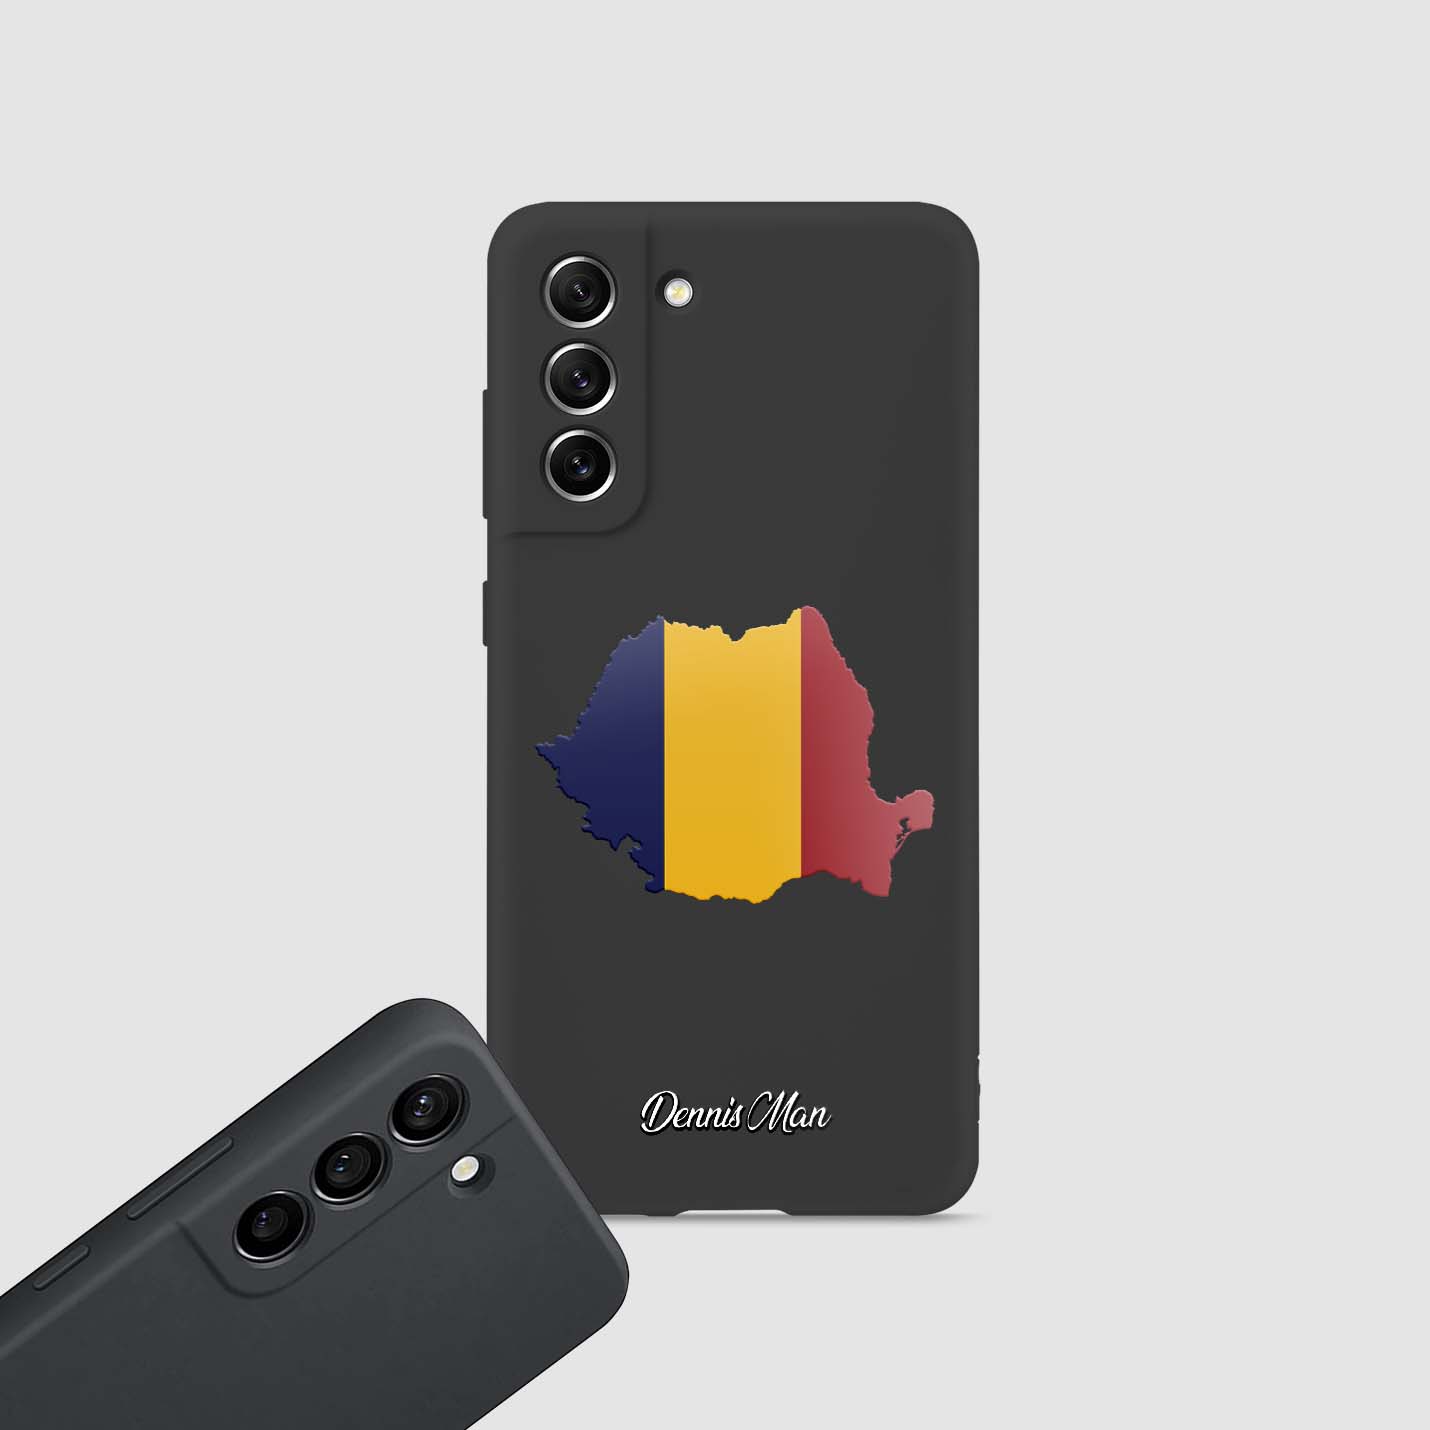 Handyhüllen mit Flagge - Rumänien - 1instaphone